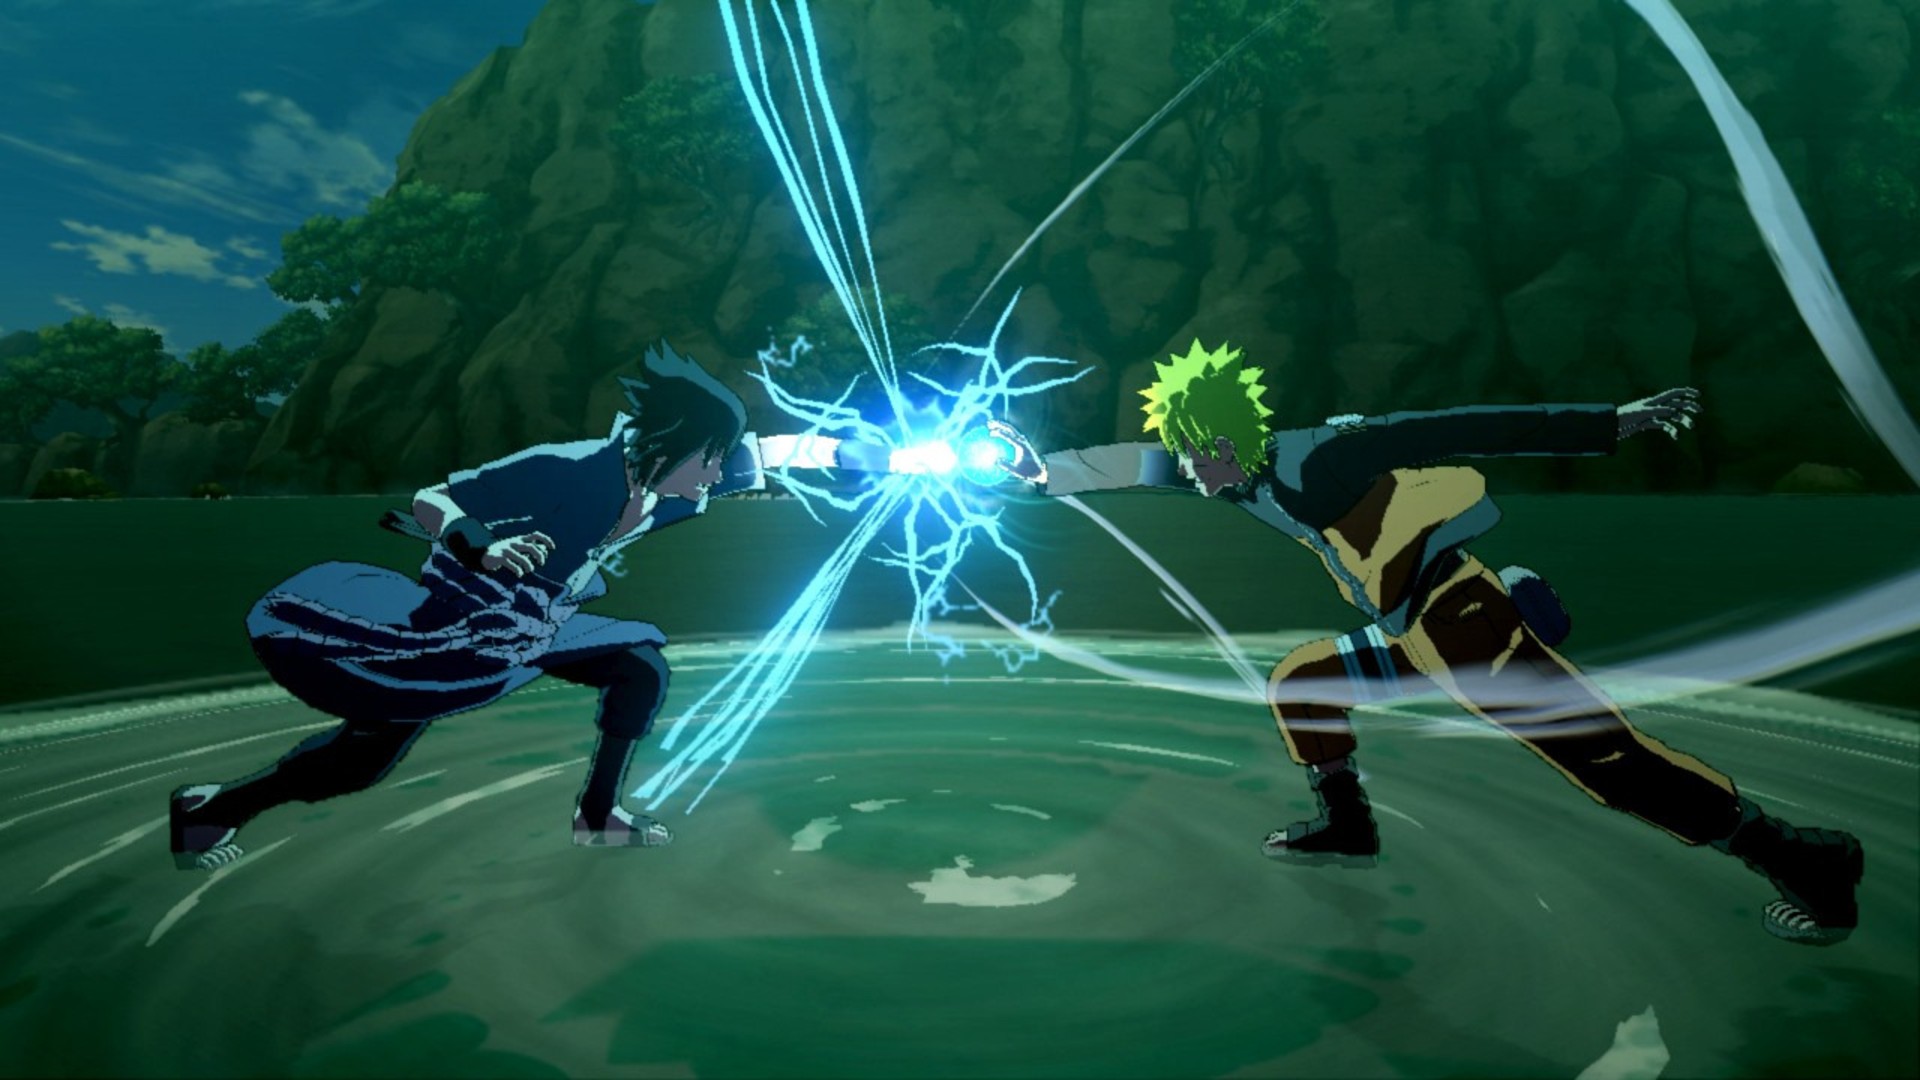 Los mejores juegos de anime: Naruto Shippuden: Ultimate Ninja Storm 3 Burst Full. La imagen muestra dos luchadores cuyos puños han colisionado y generado electricidad